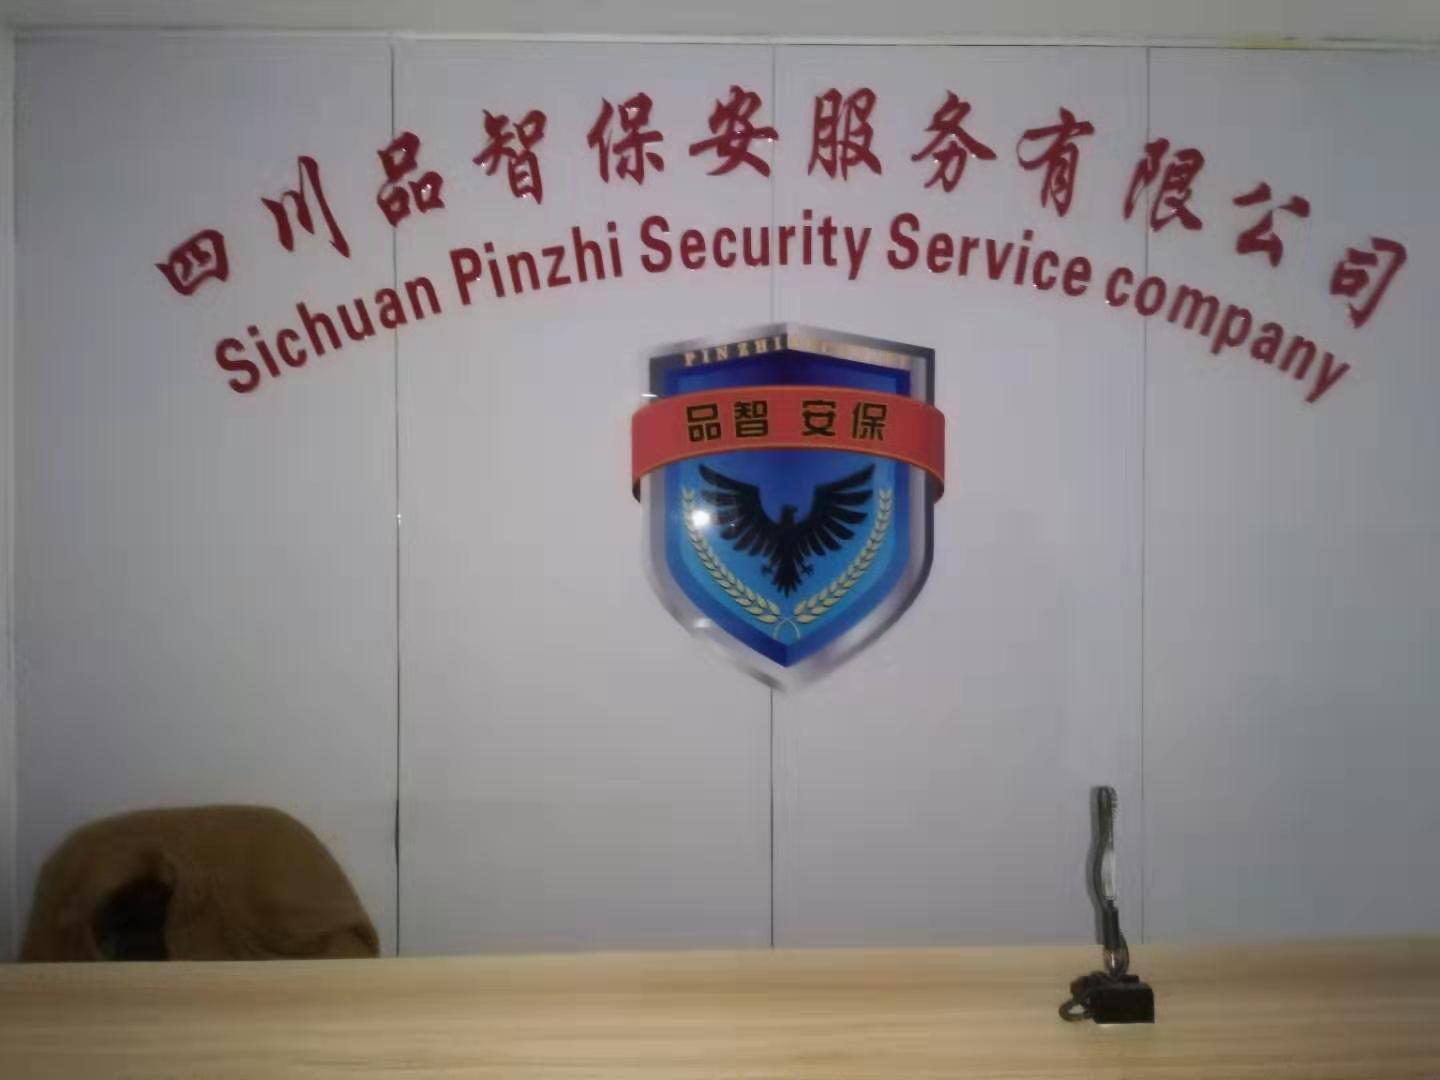 四川会议安保服务  成都会议安保